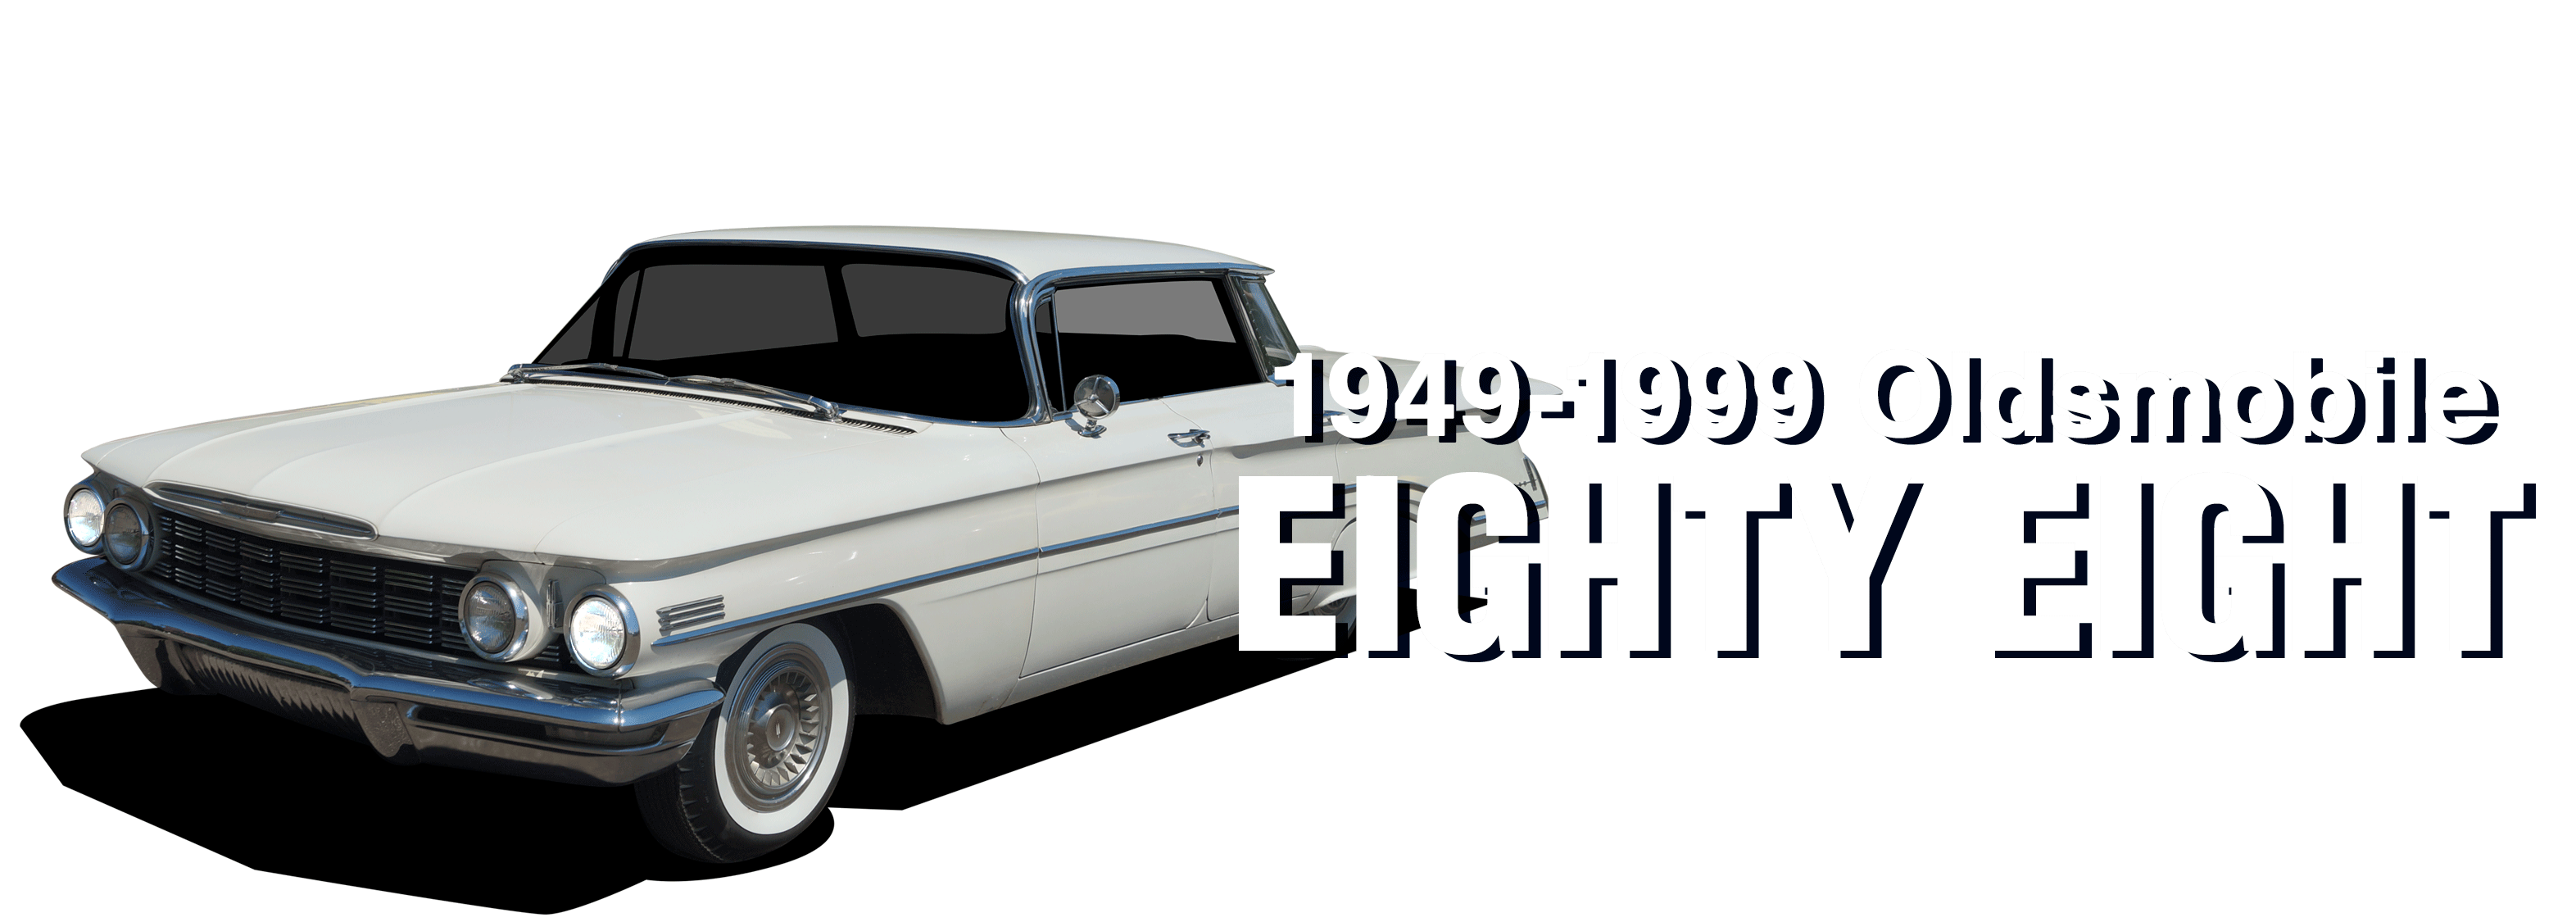 Oldsmobile-EightyEight-vehicle-desktop_2